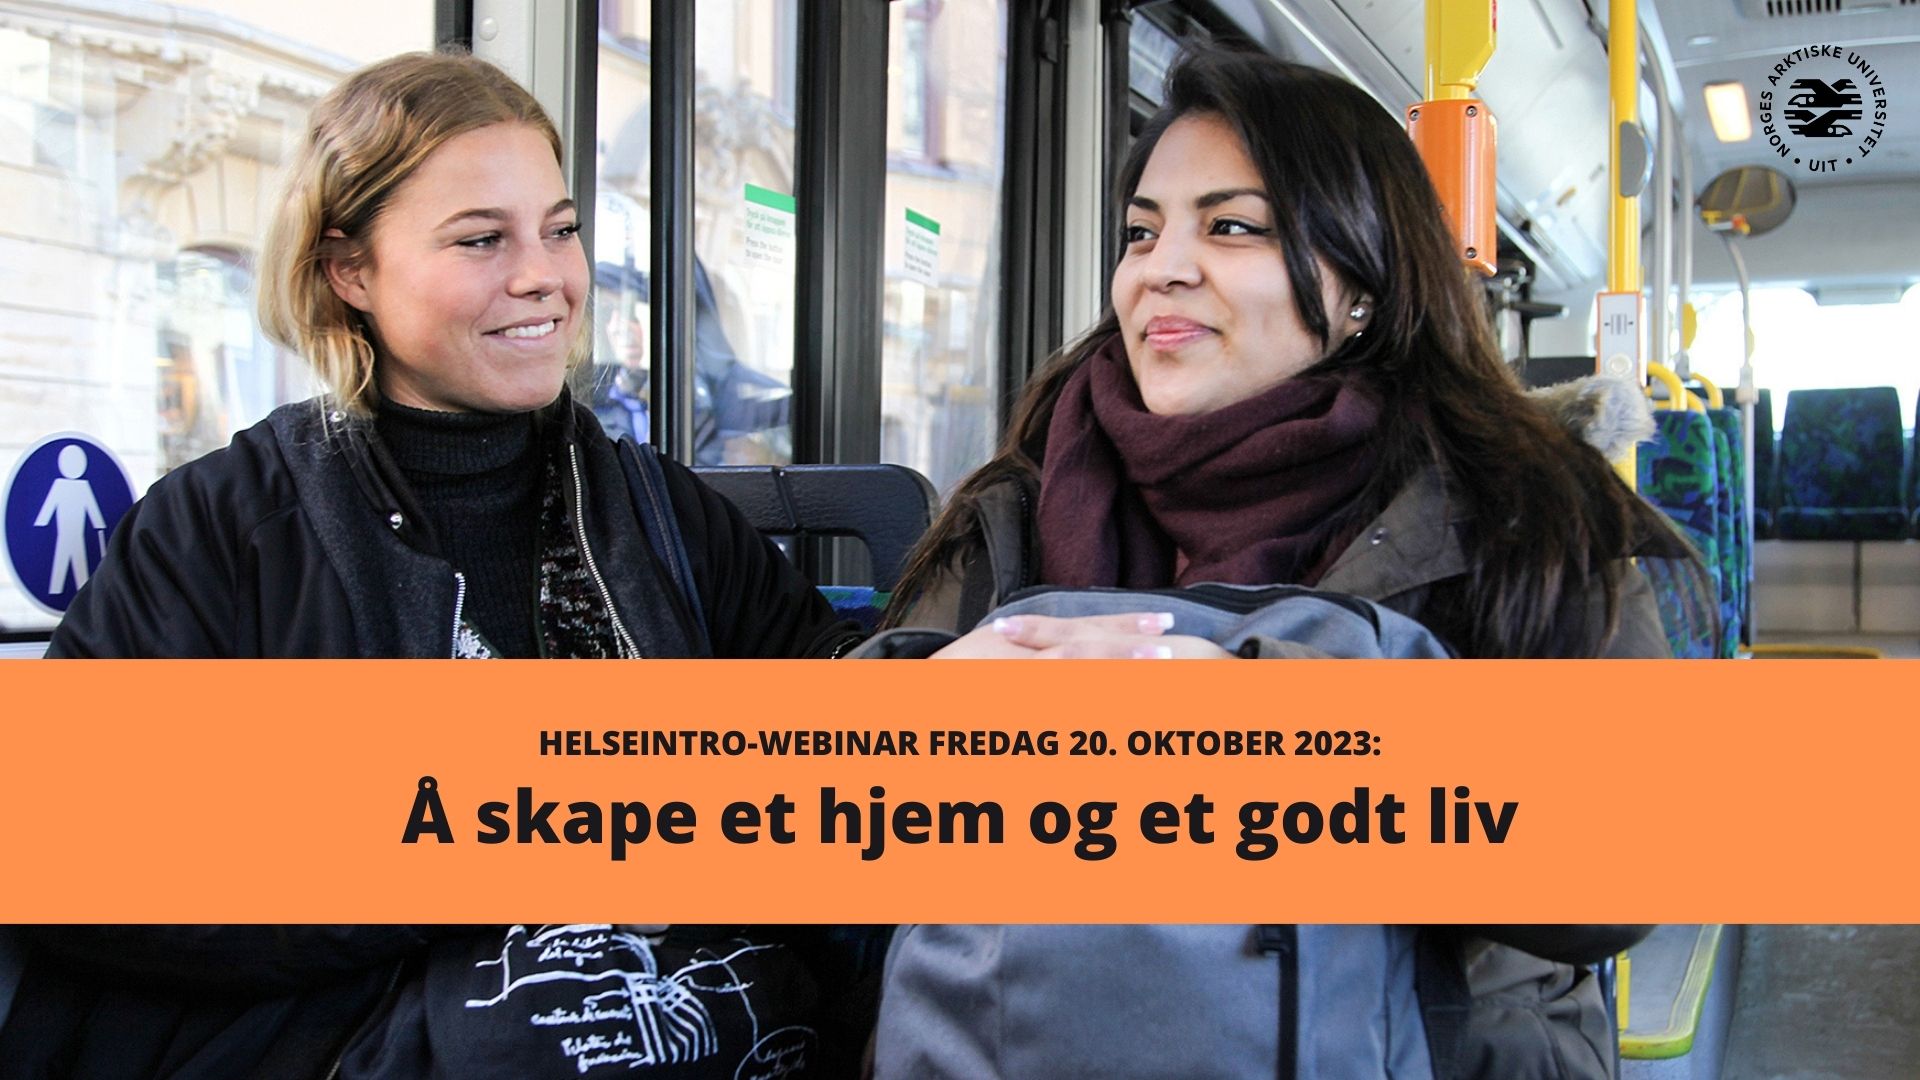 Illustrasjons-/bannerbilde for Å skape et hjem og et godt liv - webinar med forskningsprosjektet HelseIntro